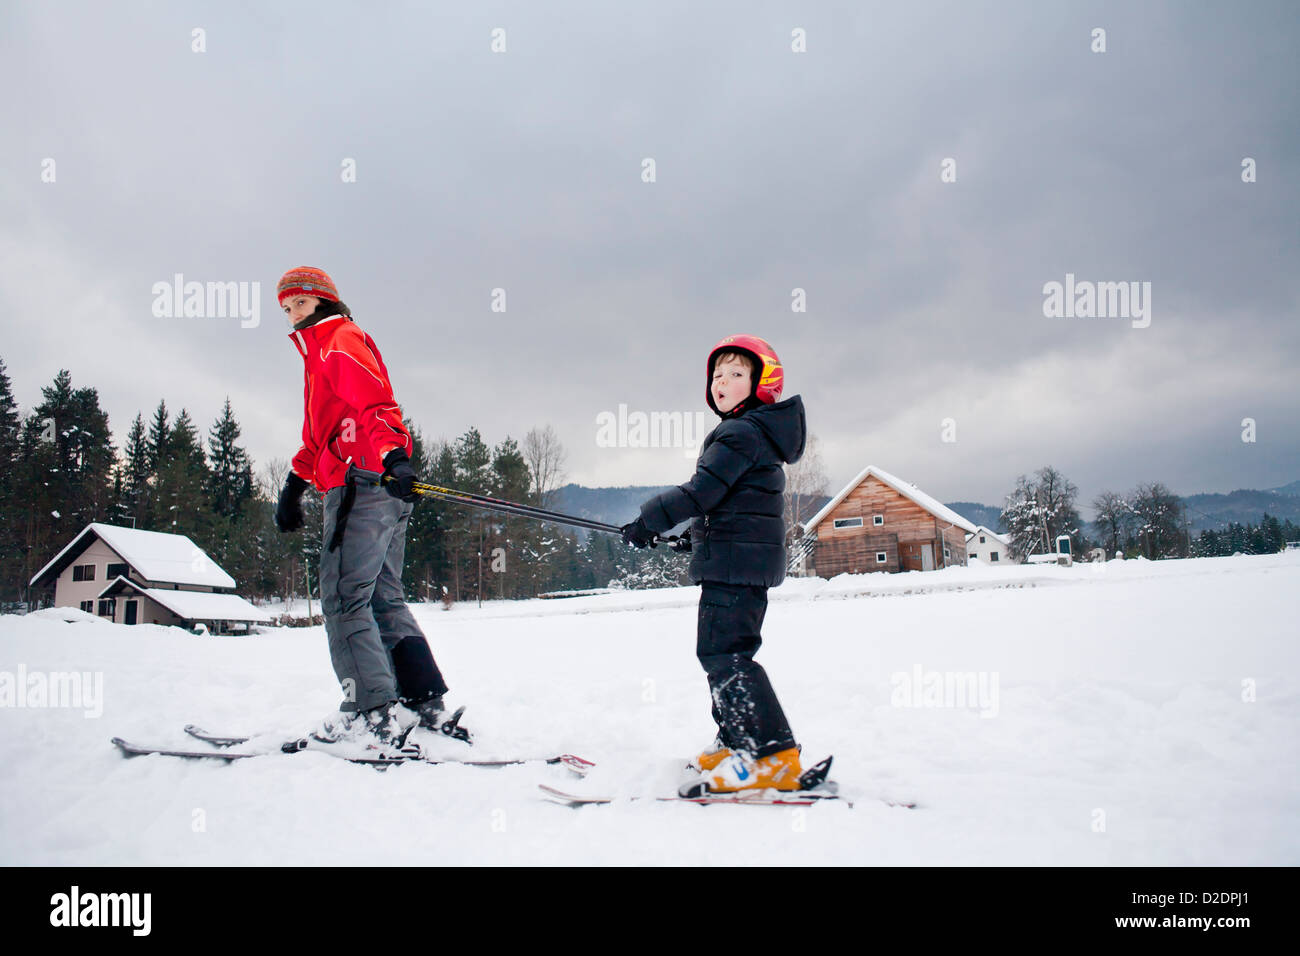 Ski lesson - family on snow. Stock Photo